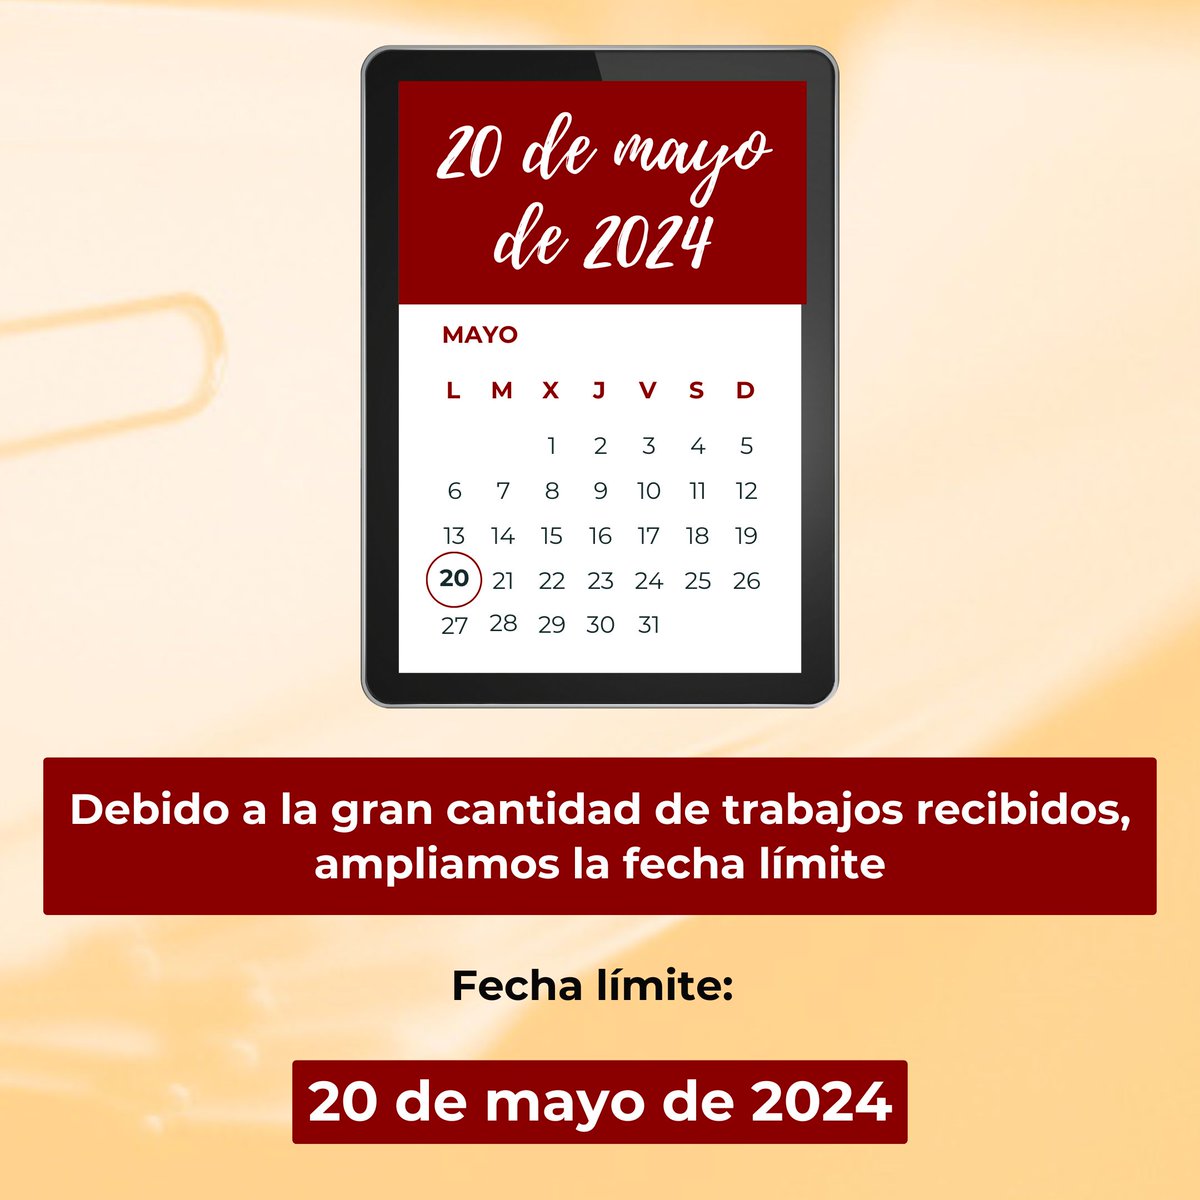 We extend the date for abstract submission until May 20, 2024. Don't miss the opportunity to submit your abstract for ISH 2024! ------------------- Ampliamos la fecha de envío de trabajos hasta el 20 de mayo de 2024. ¡No pierda la oportunidad de enviar su resúmen para ISH 2024!